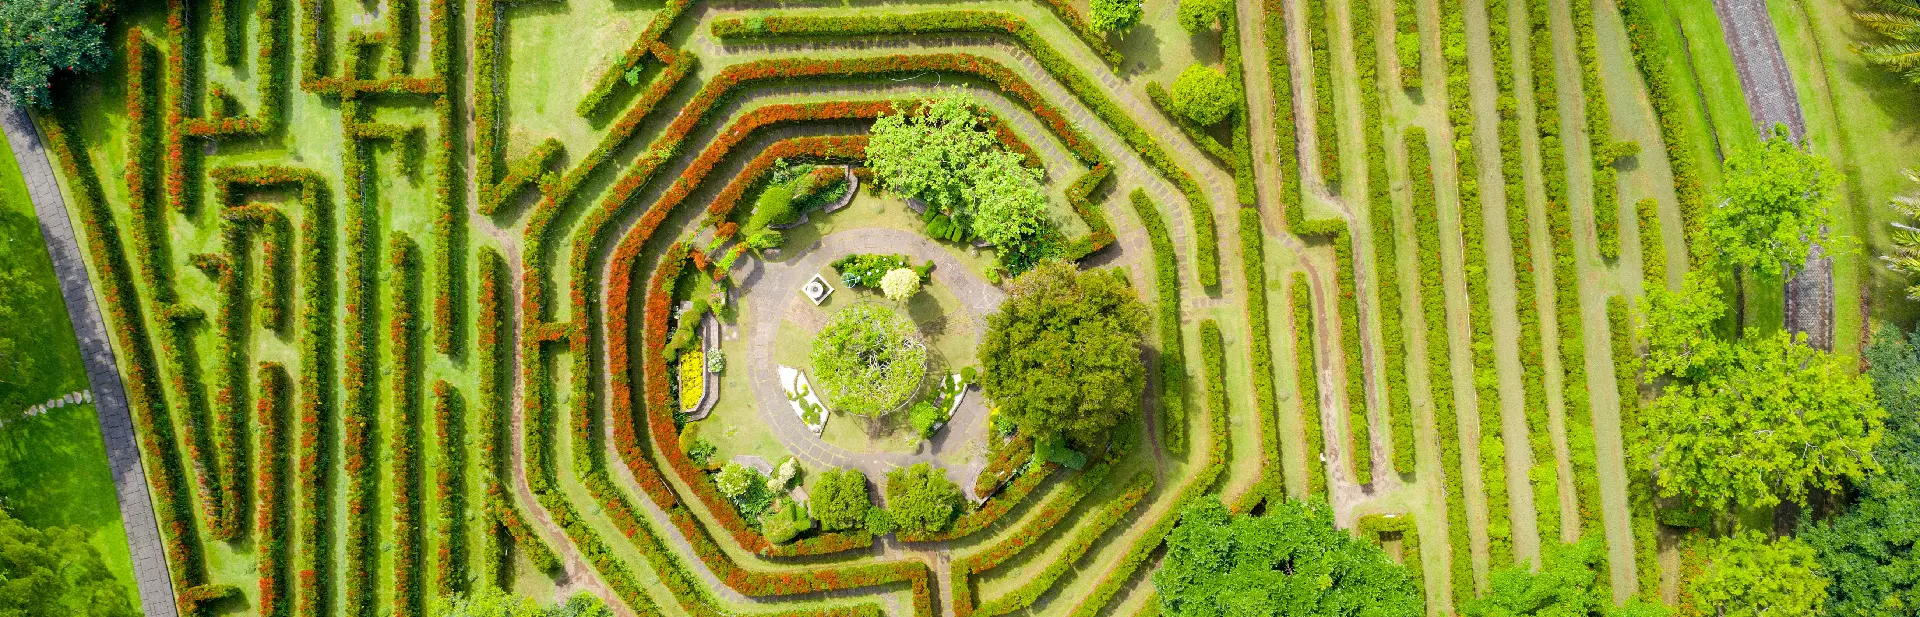 Maze garden